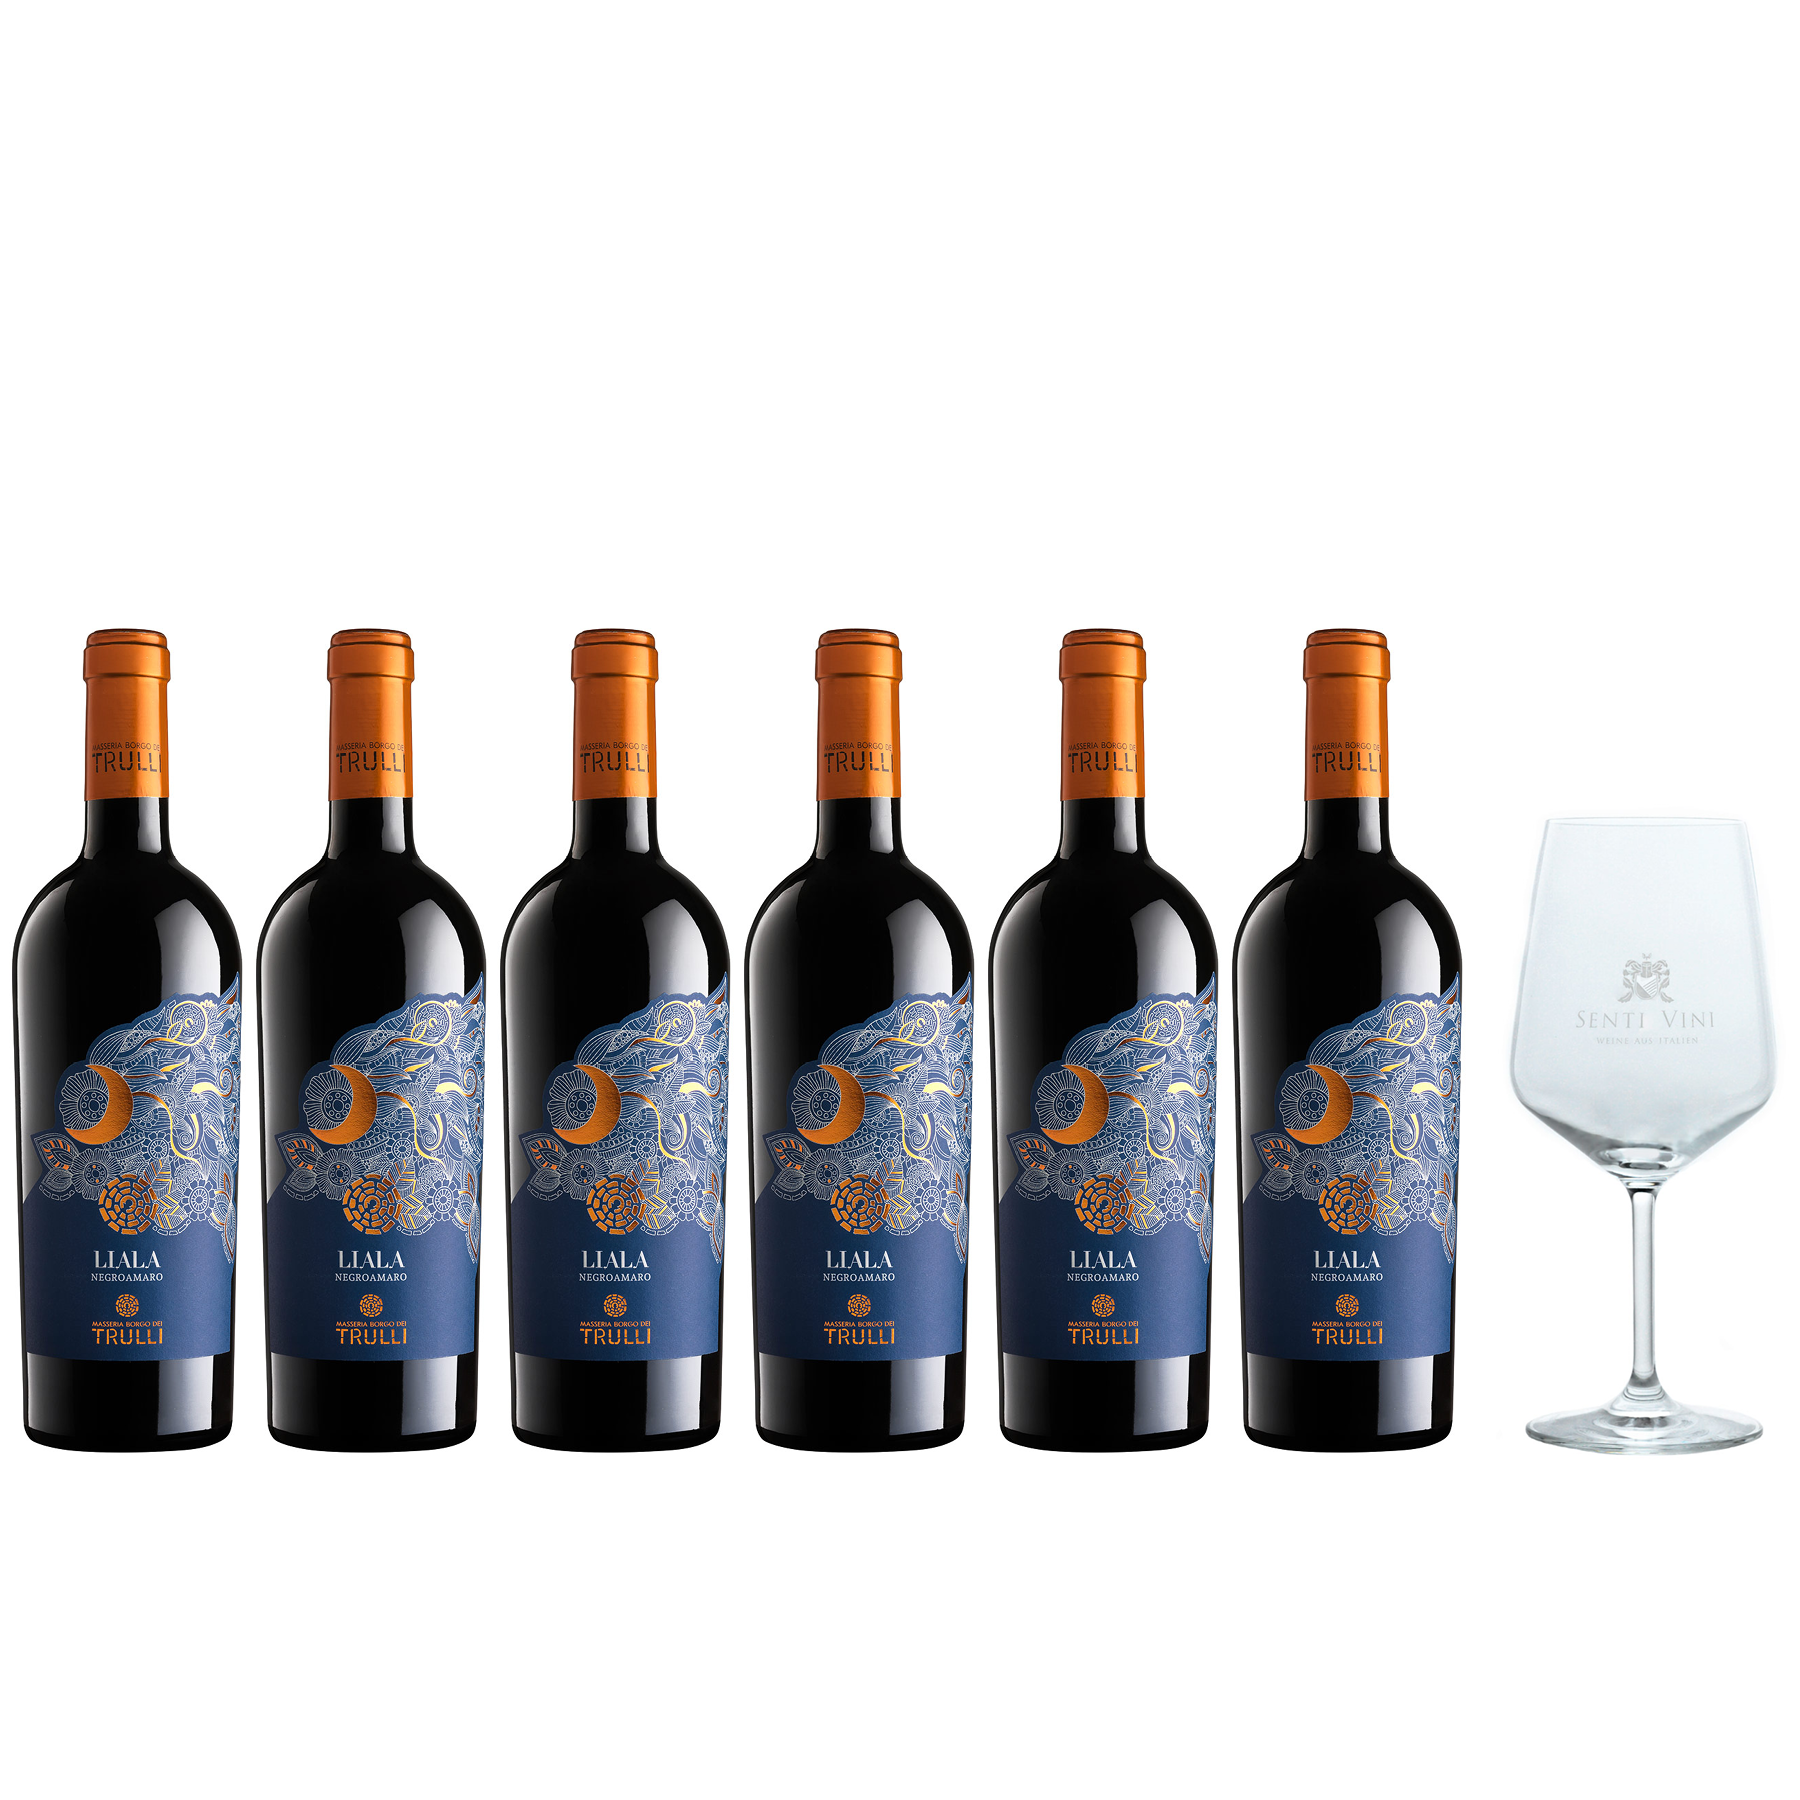 Sparpaket Masseria Borgo Italien | IGP (6 0,75l) Weinglas Online aus Spiegelau x Weine bei Senti 2021 - Senti mit Vini kaufen Salento dei Liala Vini Negroamaro Trulli